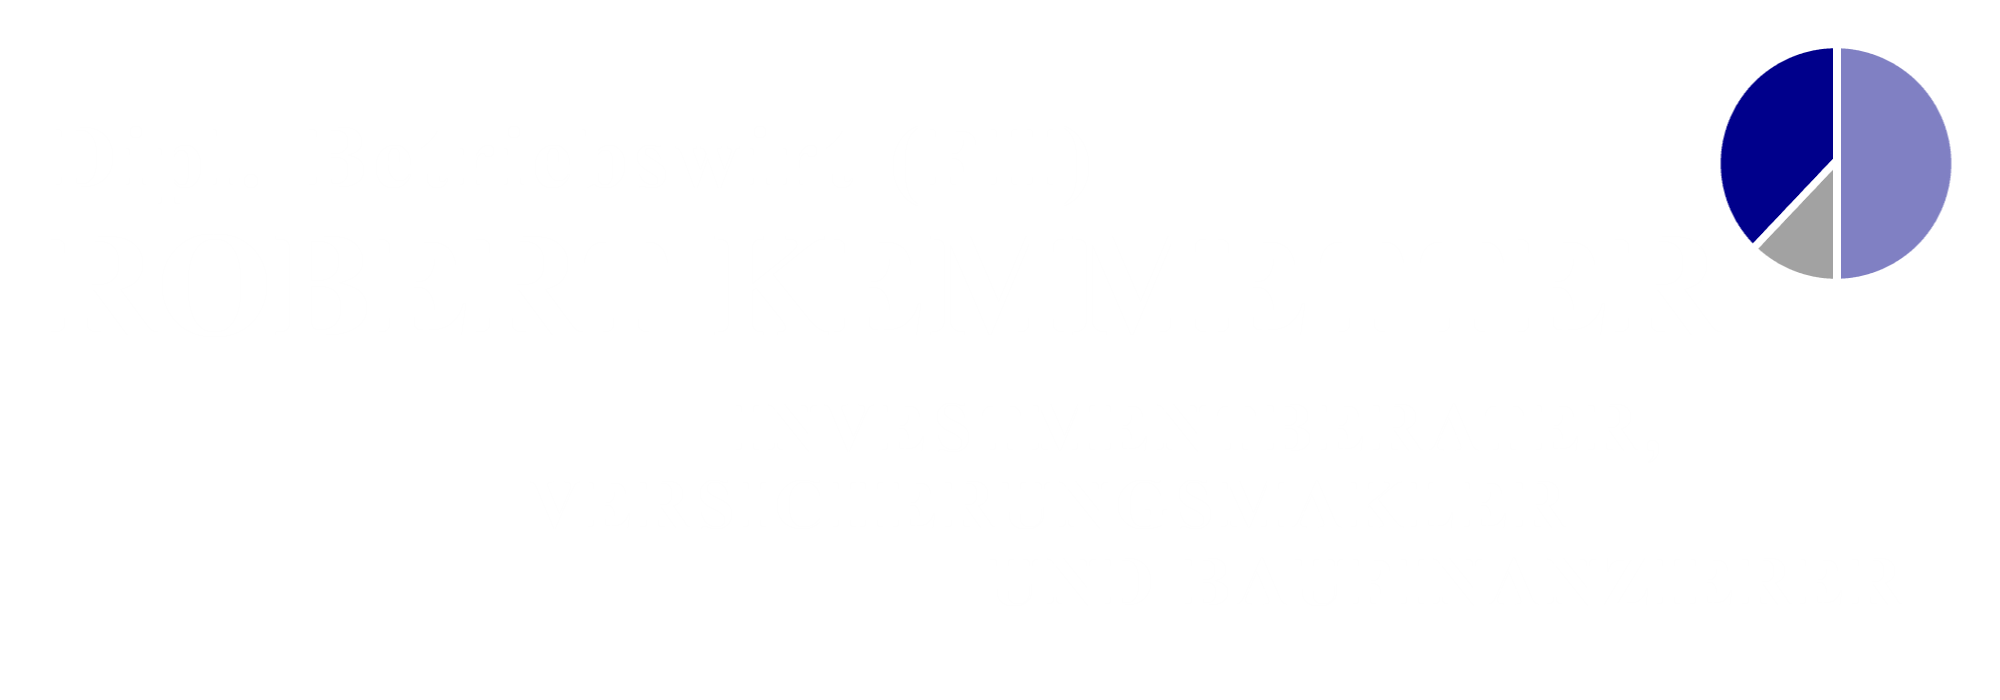 Logo Robert Kemmetter - Investmentberater, Versicherungsmakler und Baufinanzierer